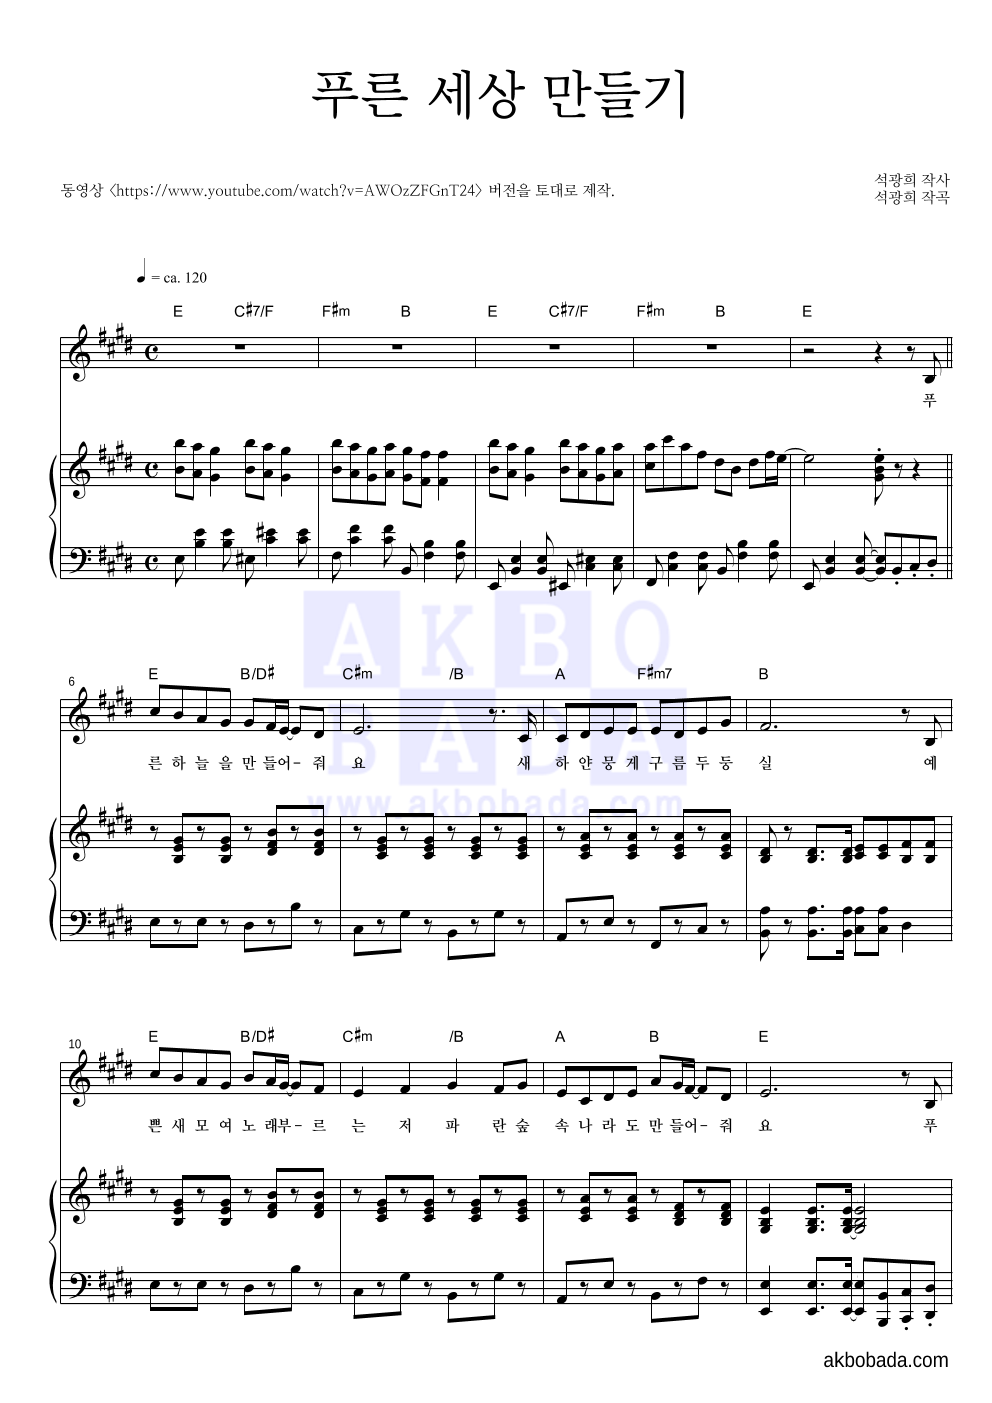 동요 - 푸른 세상 만들기 피아노 3단 악보 